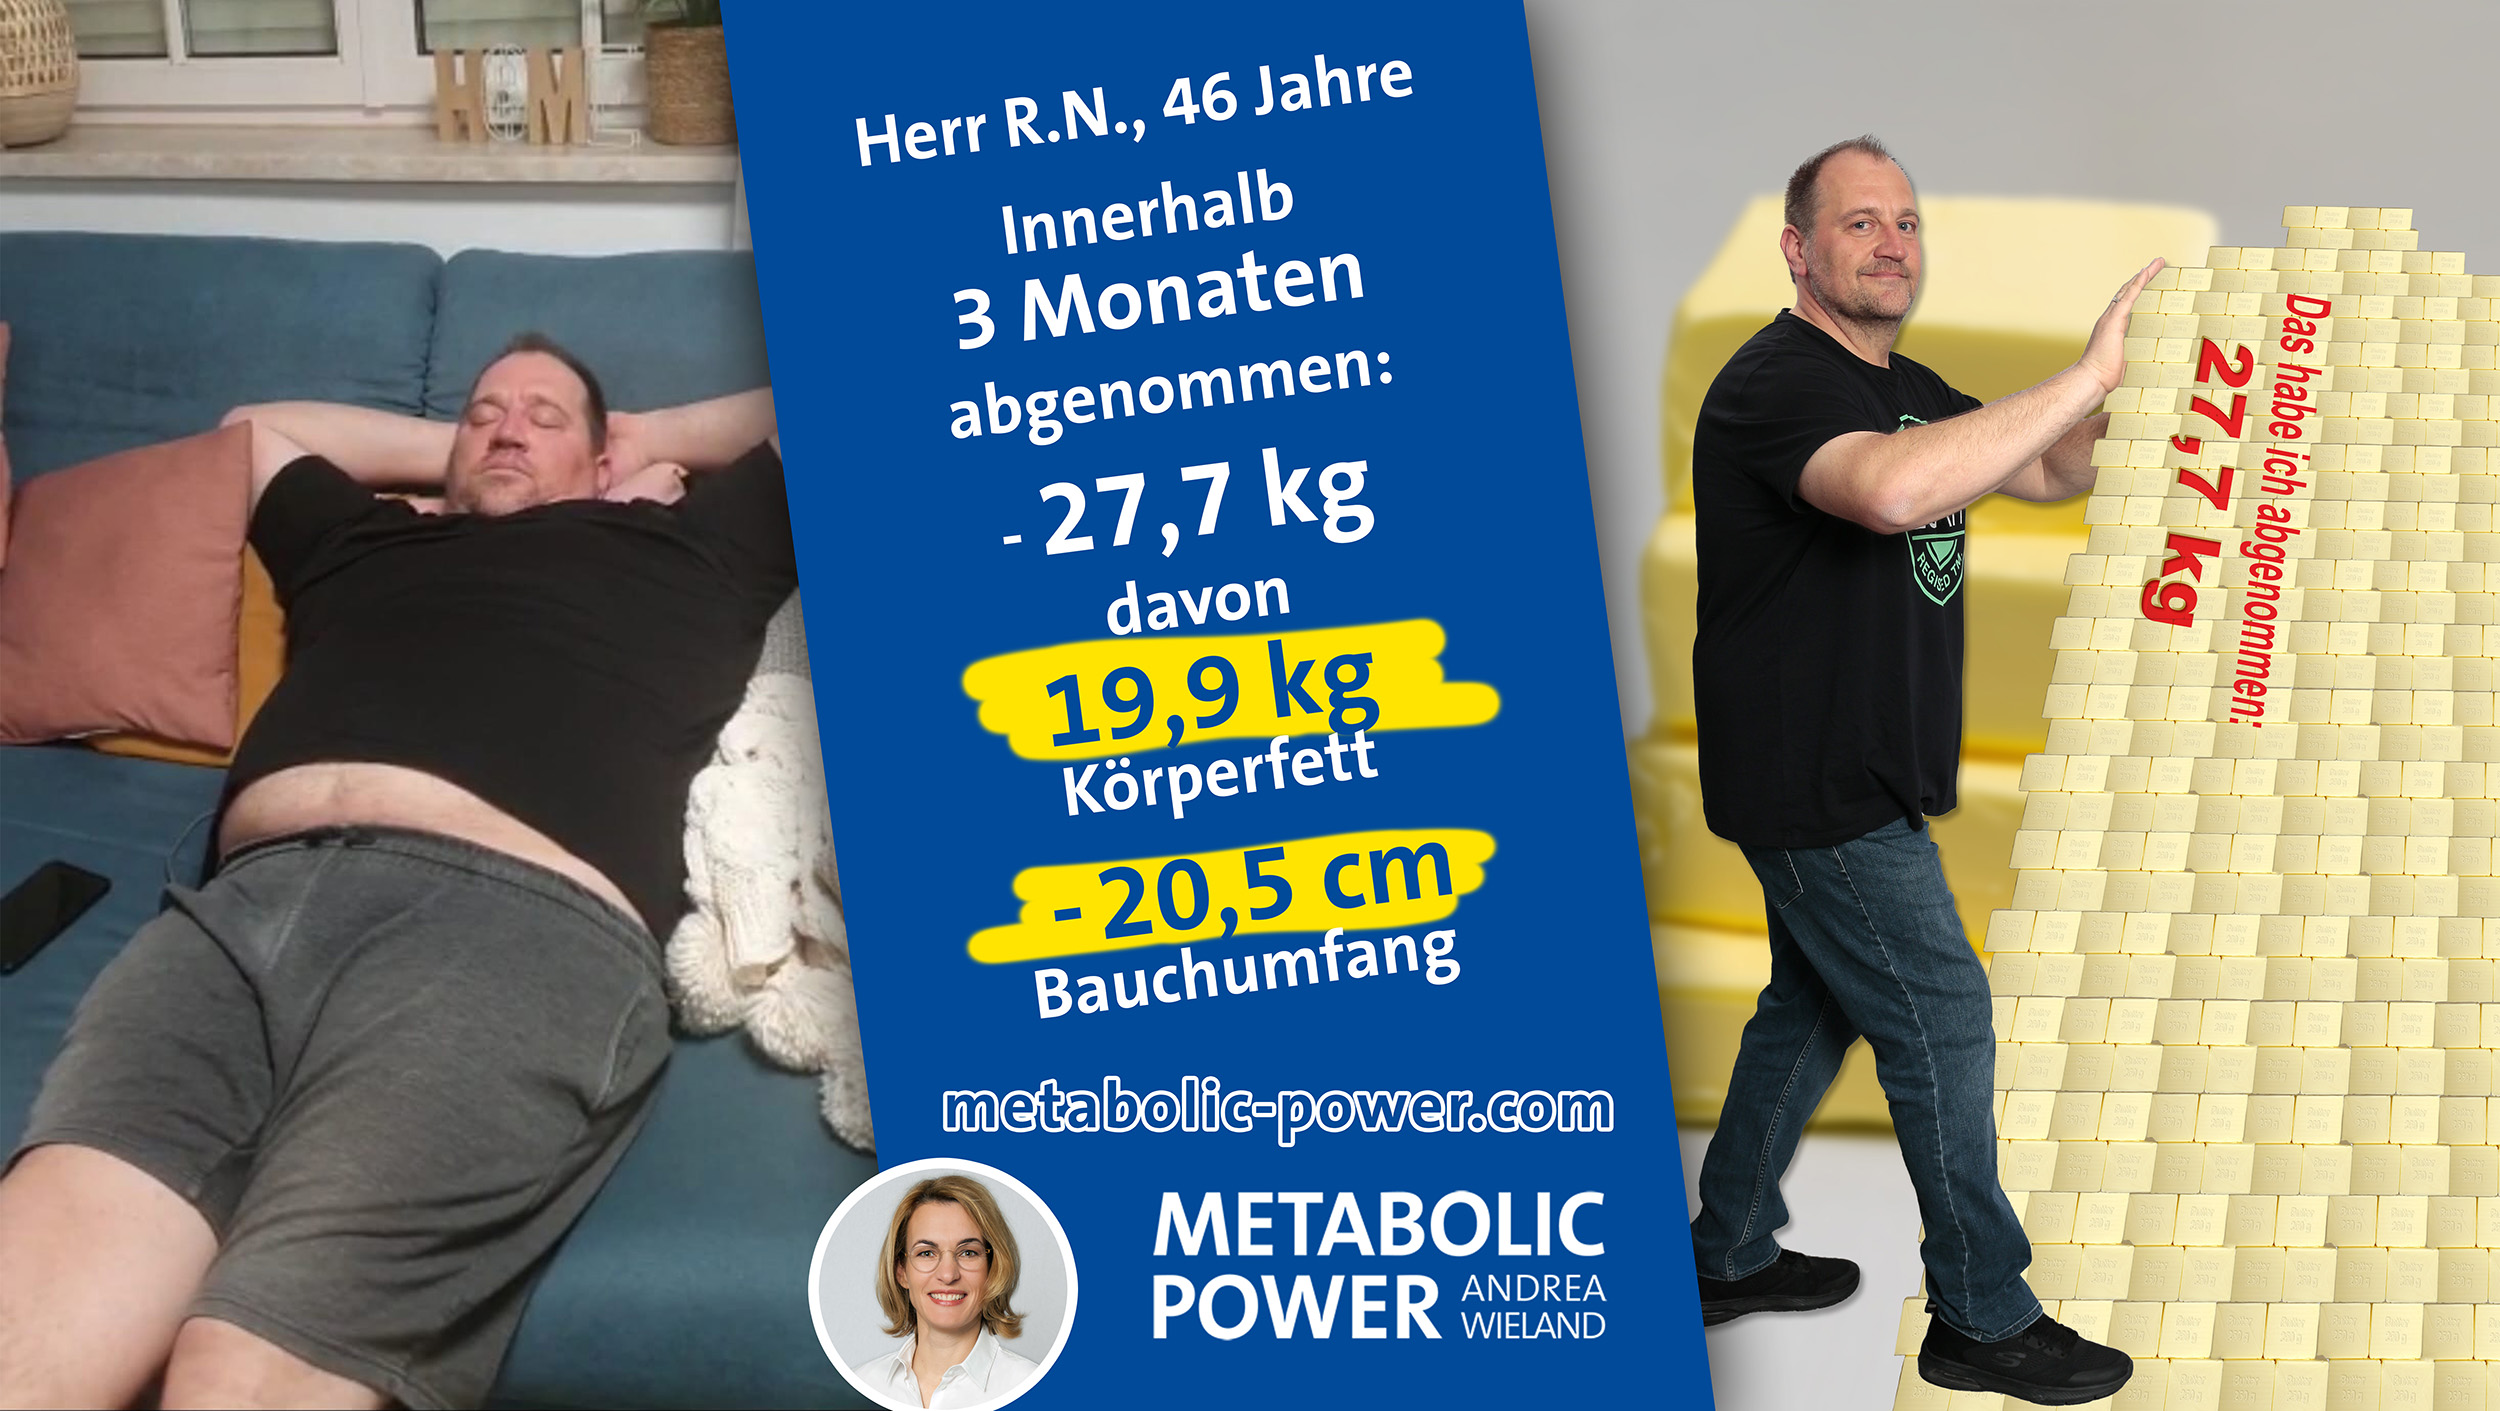 Andrea Wieland Metabolic Power Abnehmen aber sicher - R. N. 27 kg in 3 Monaten abgenommen